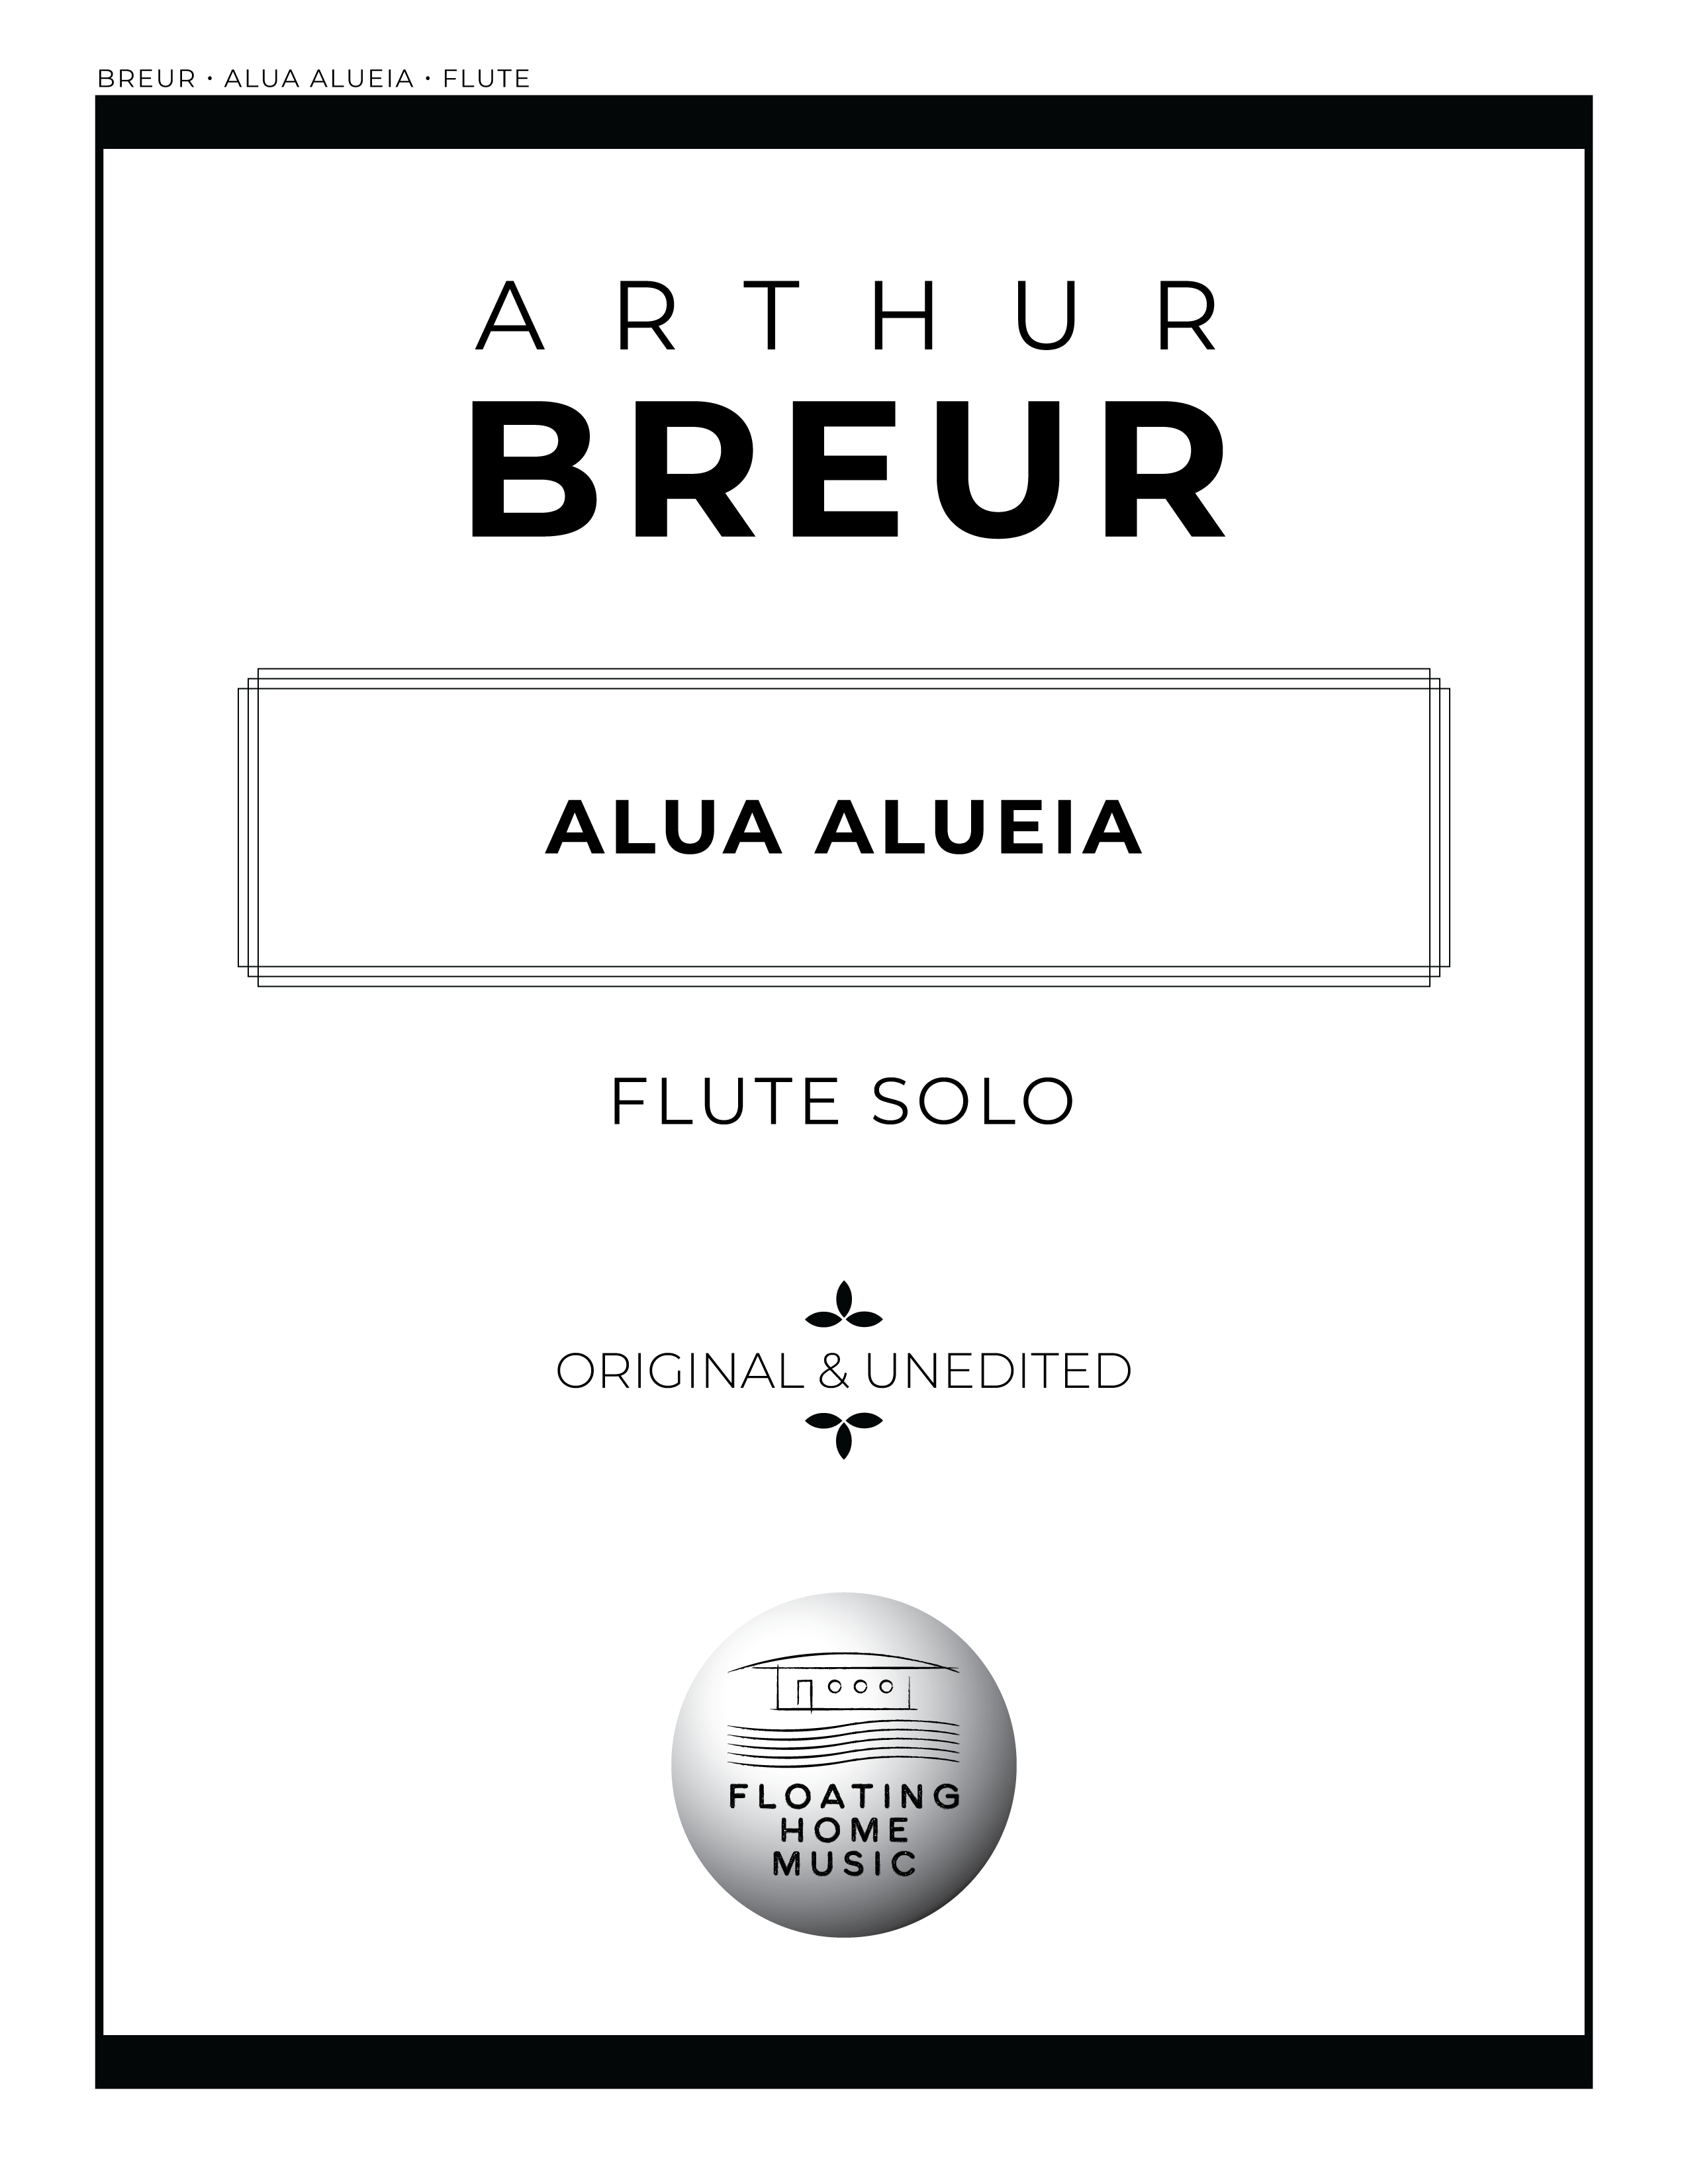 Alua Alueia (Flute Solo)